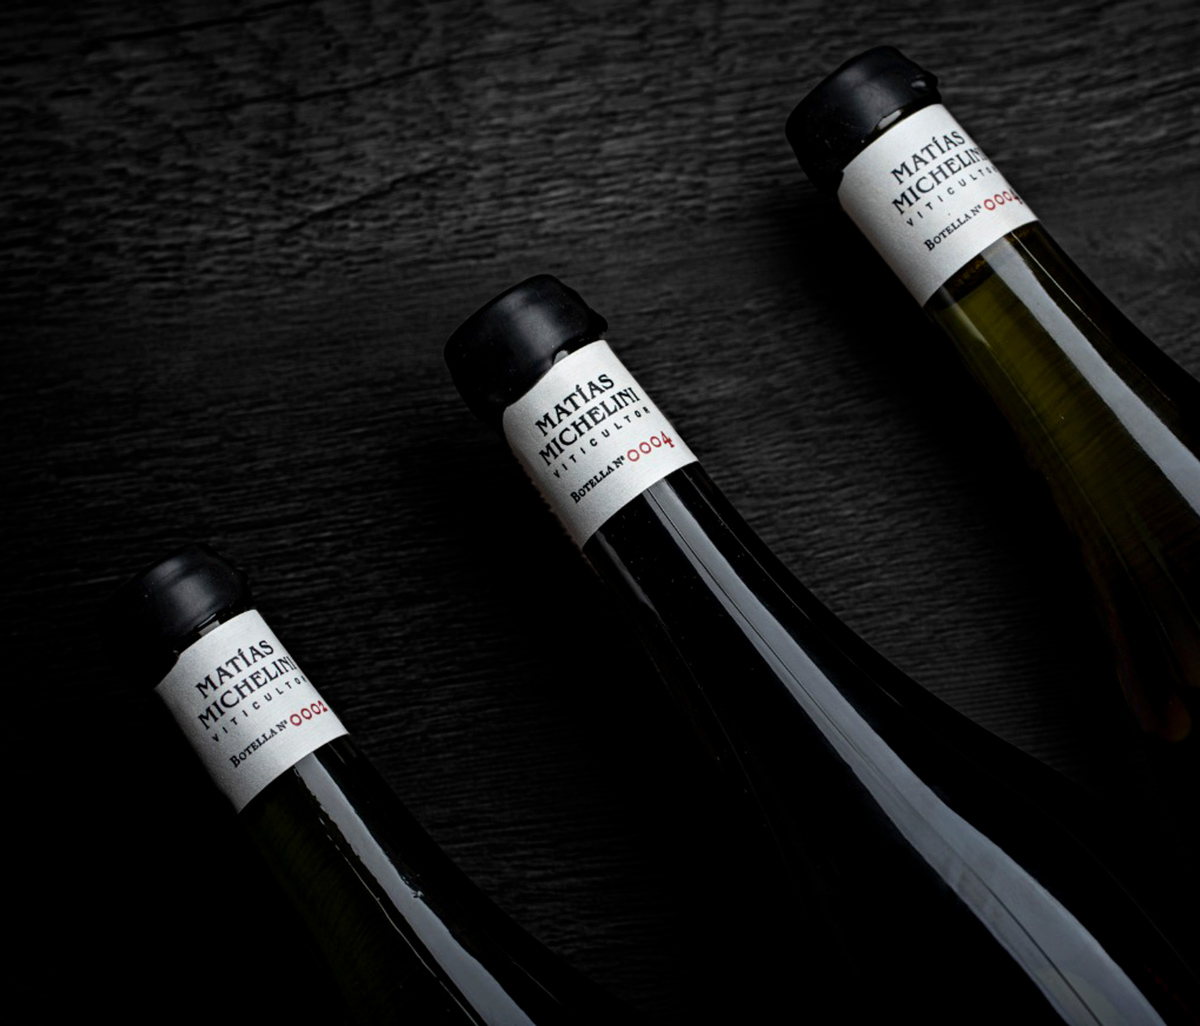 Wine label design Solido Sitio La Romain Caos Matias Michelini Mendoza Argentina